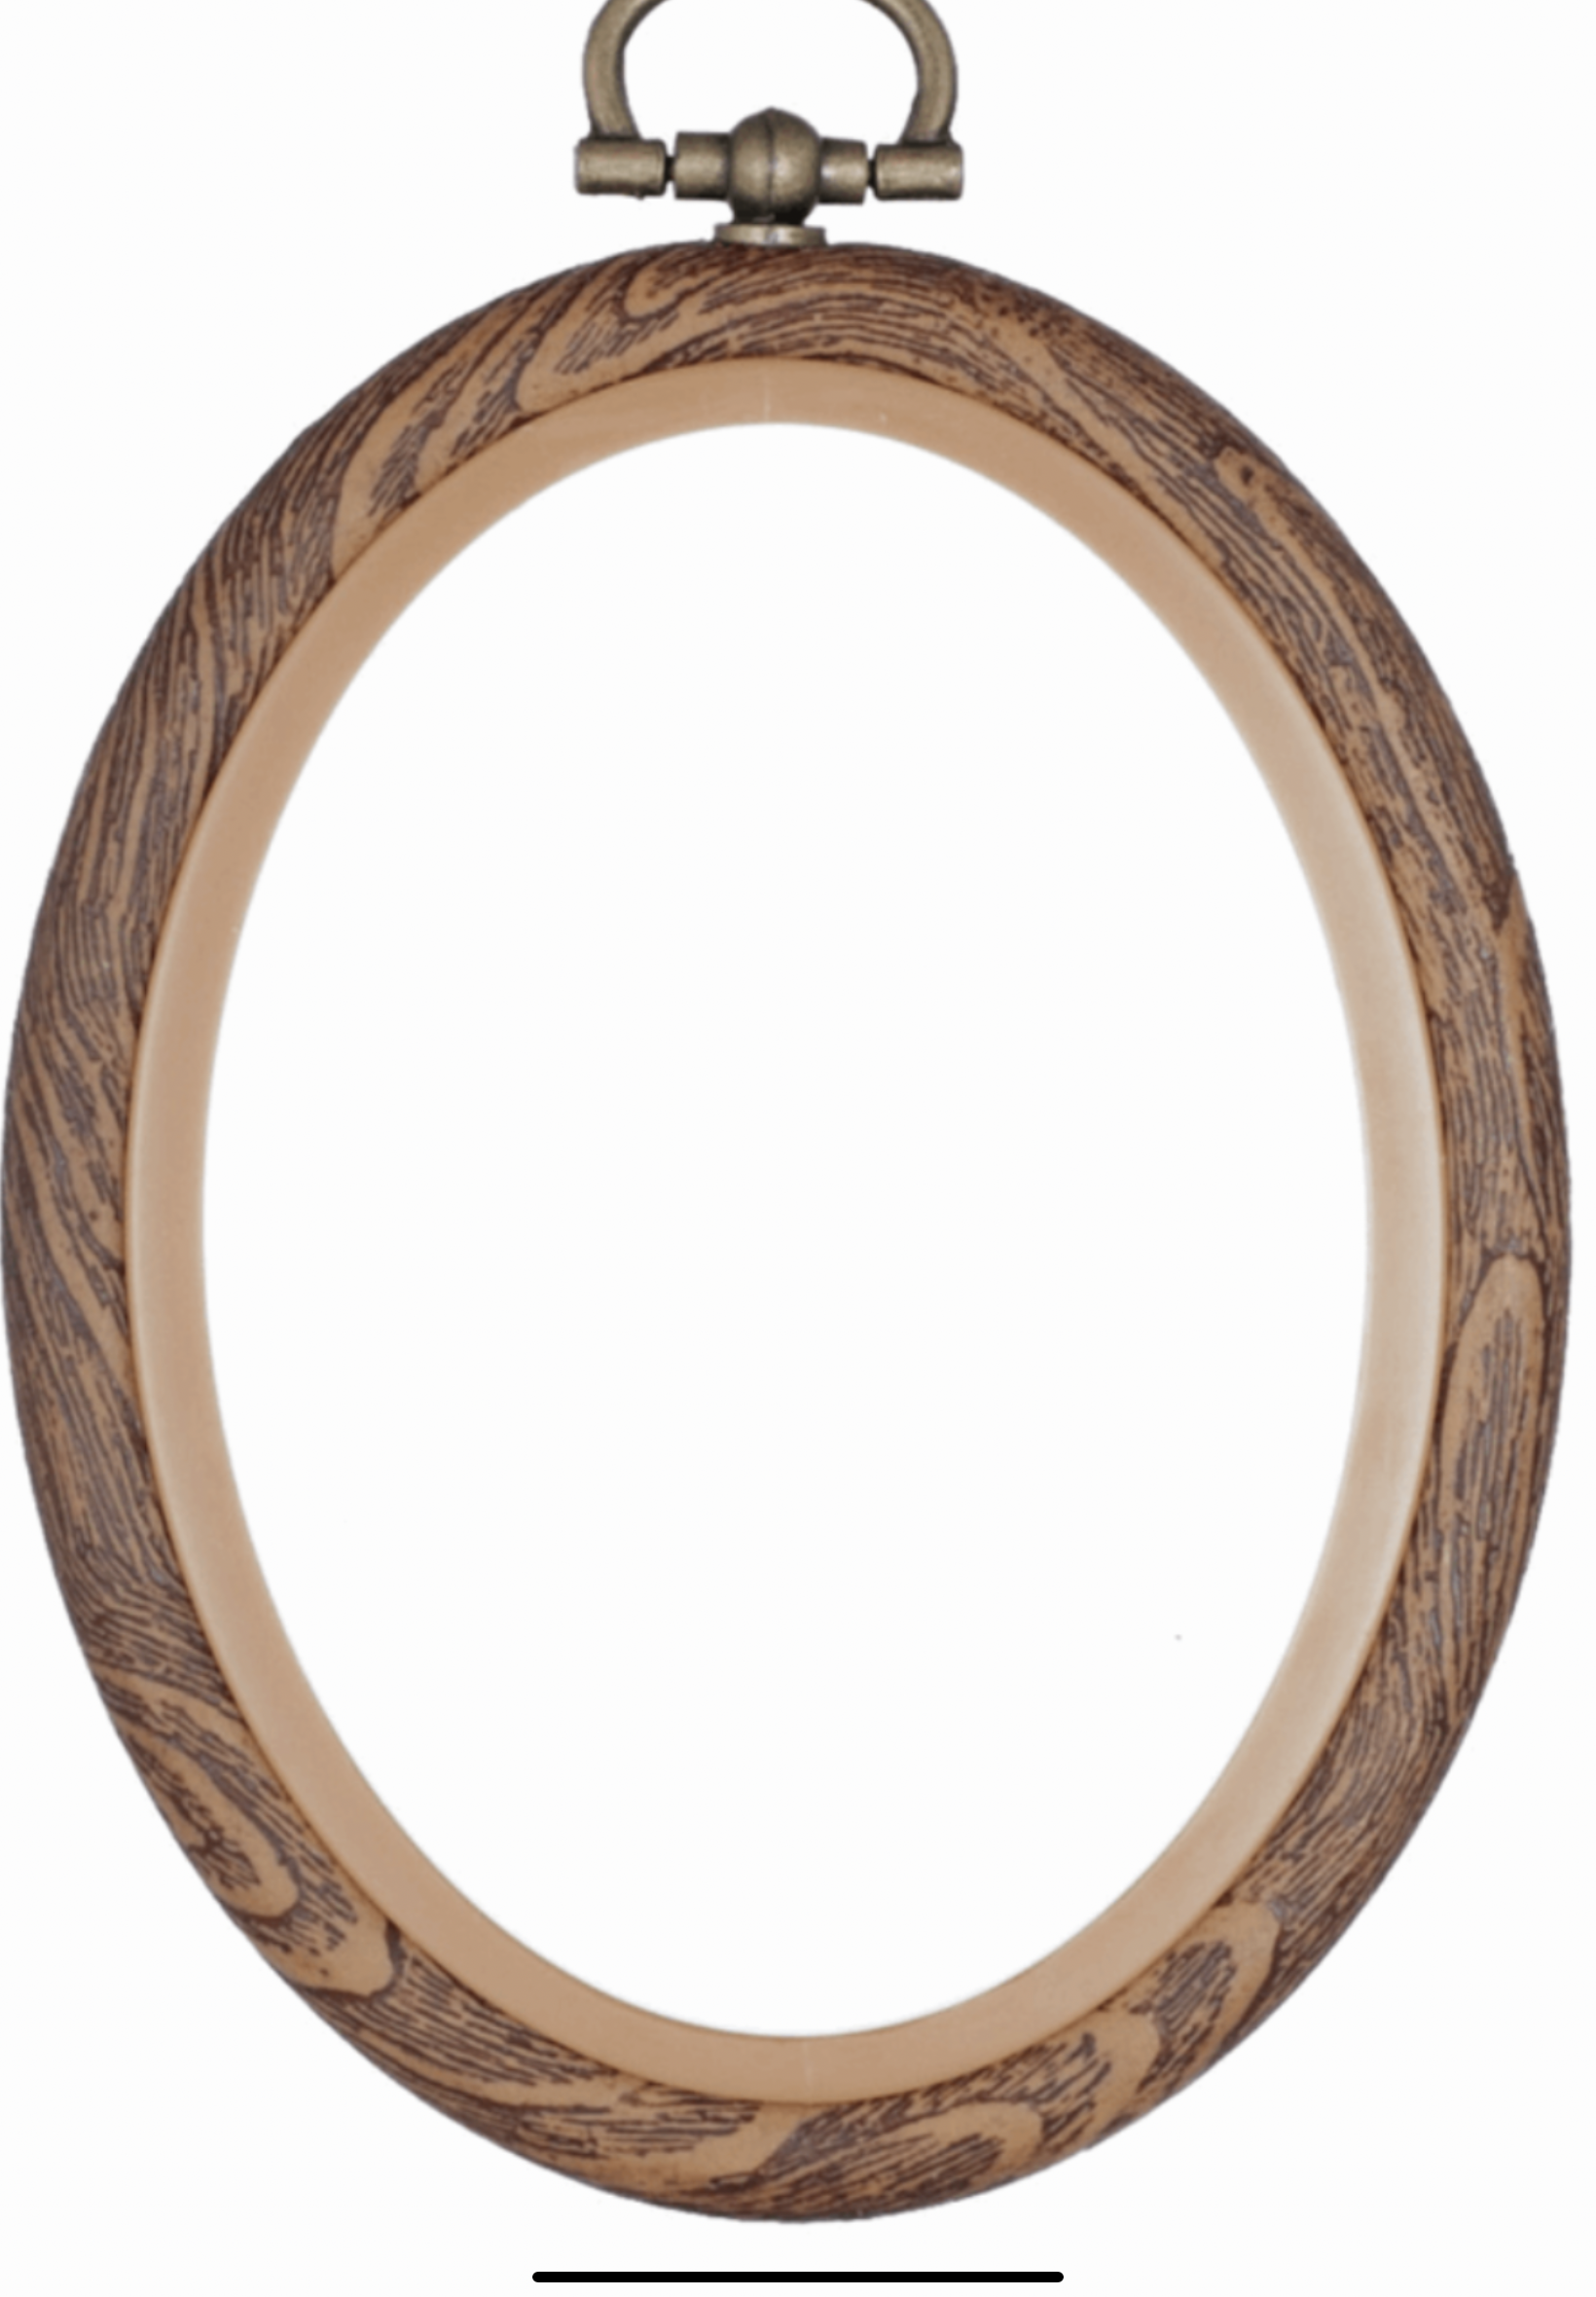 Wood grain flexi hoop